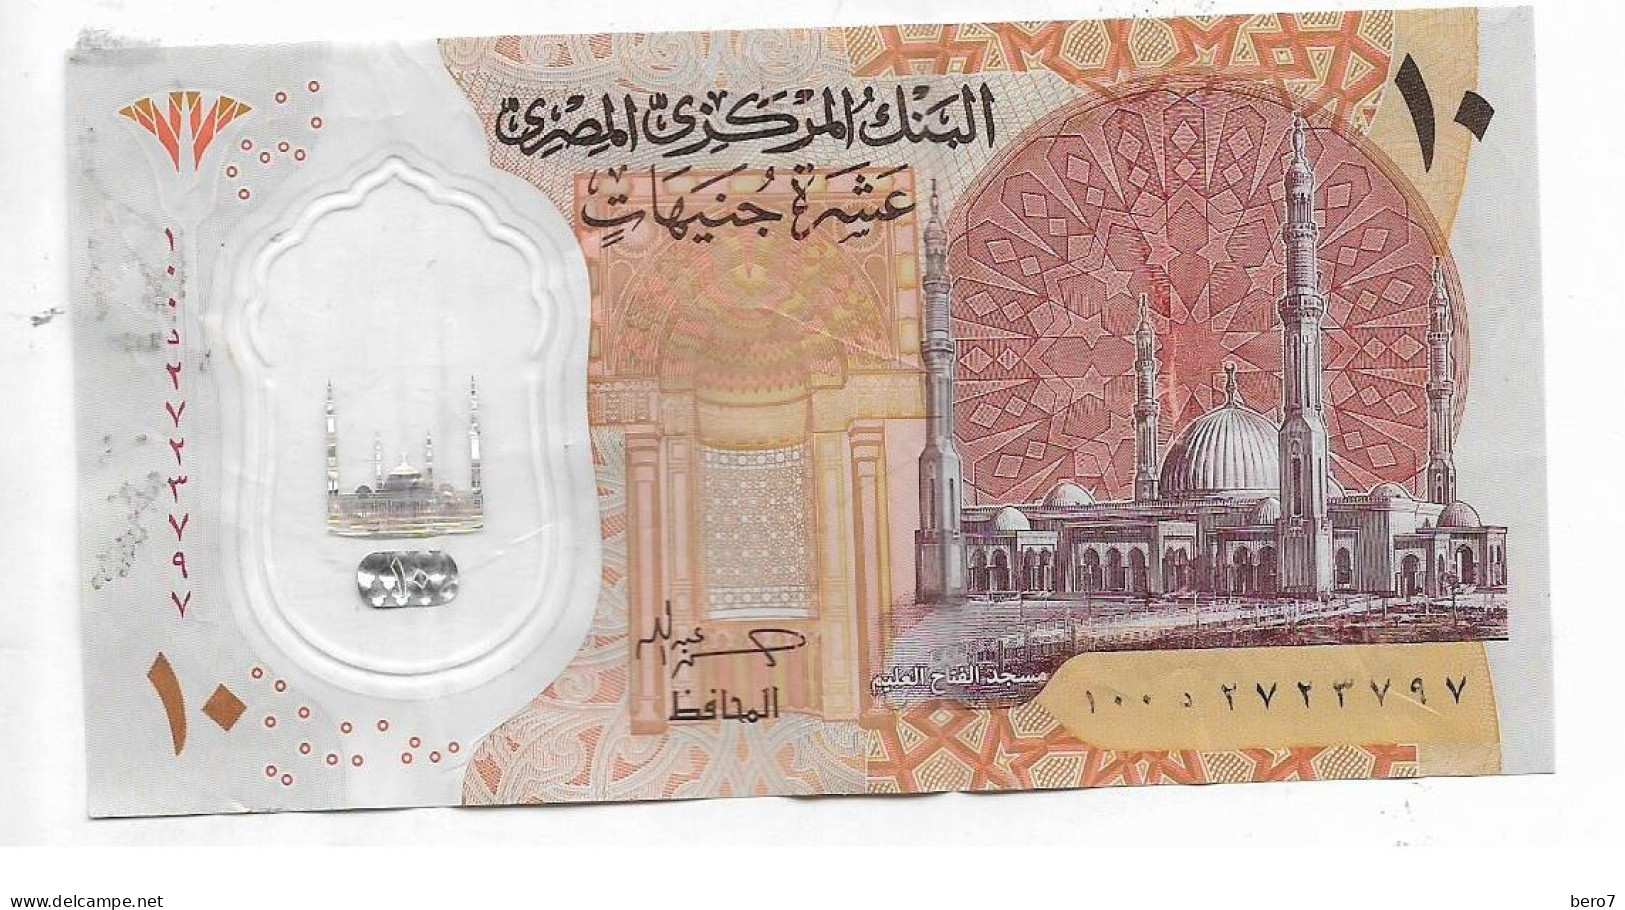 Egypt 10 Pounds Polymer Replacement - Circuated Hassan Abdallah [Circulated]  (Egypte) (Egitto) (Ägypten) (Egipto) - Egypte